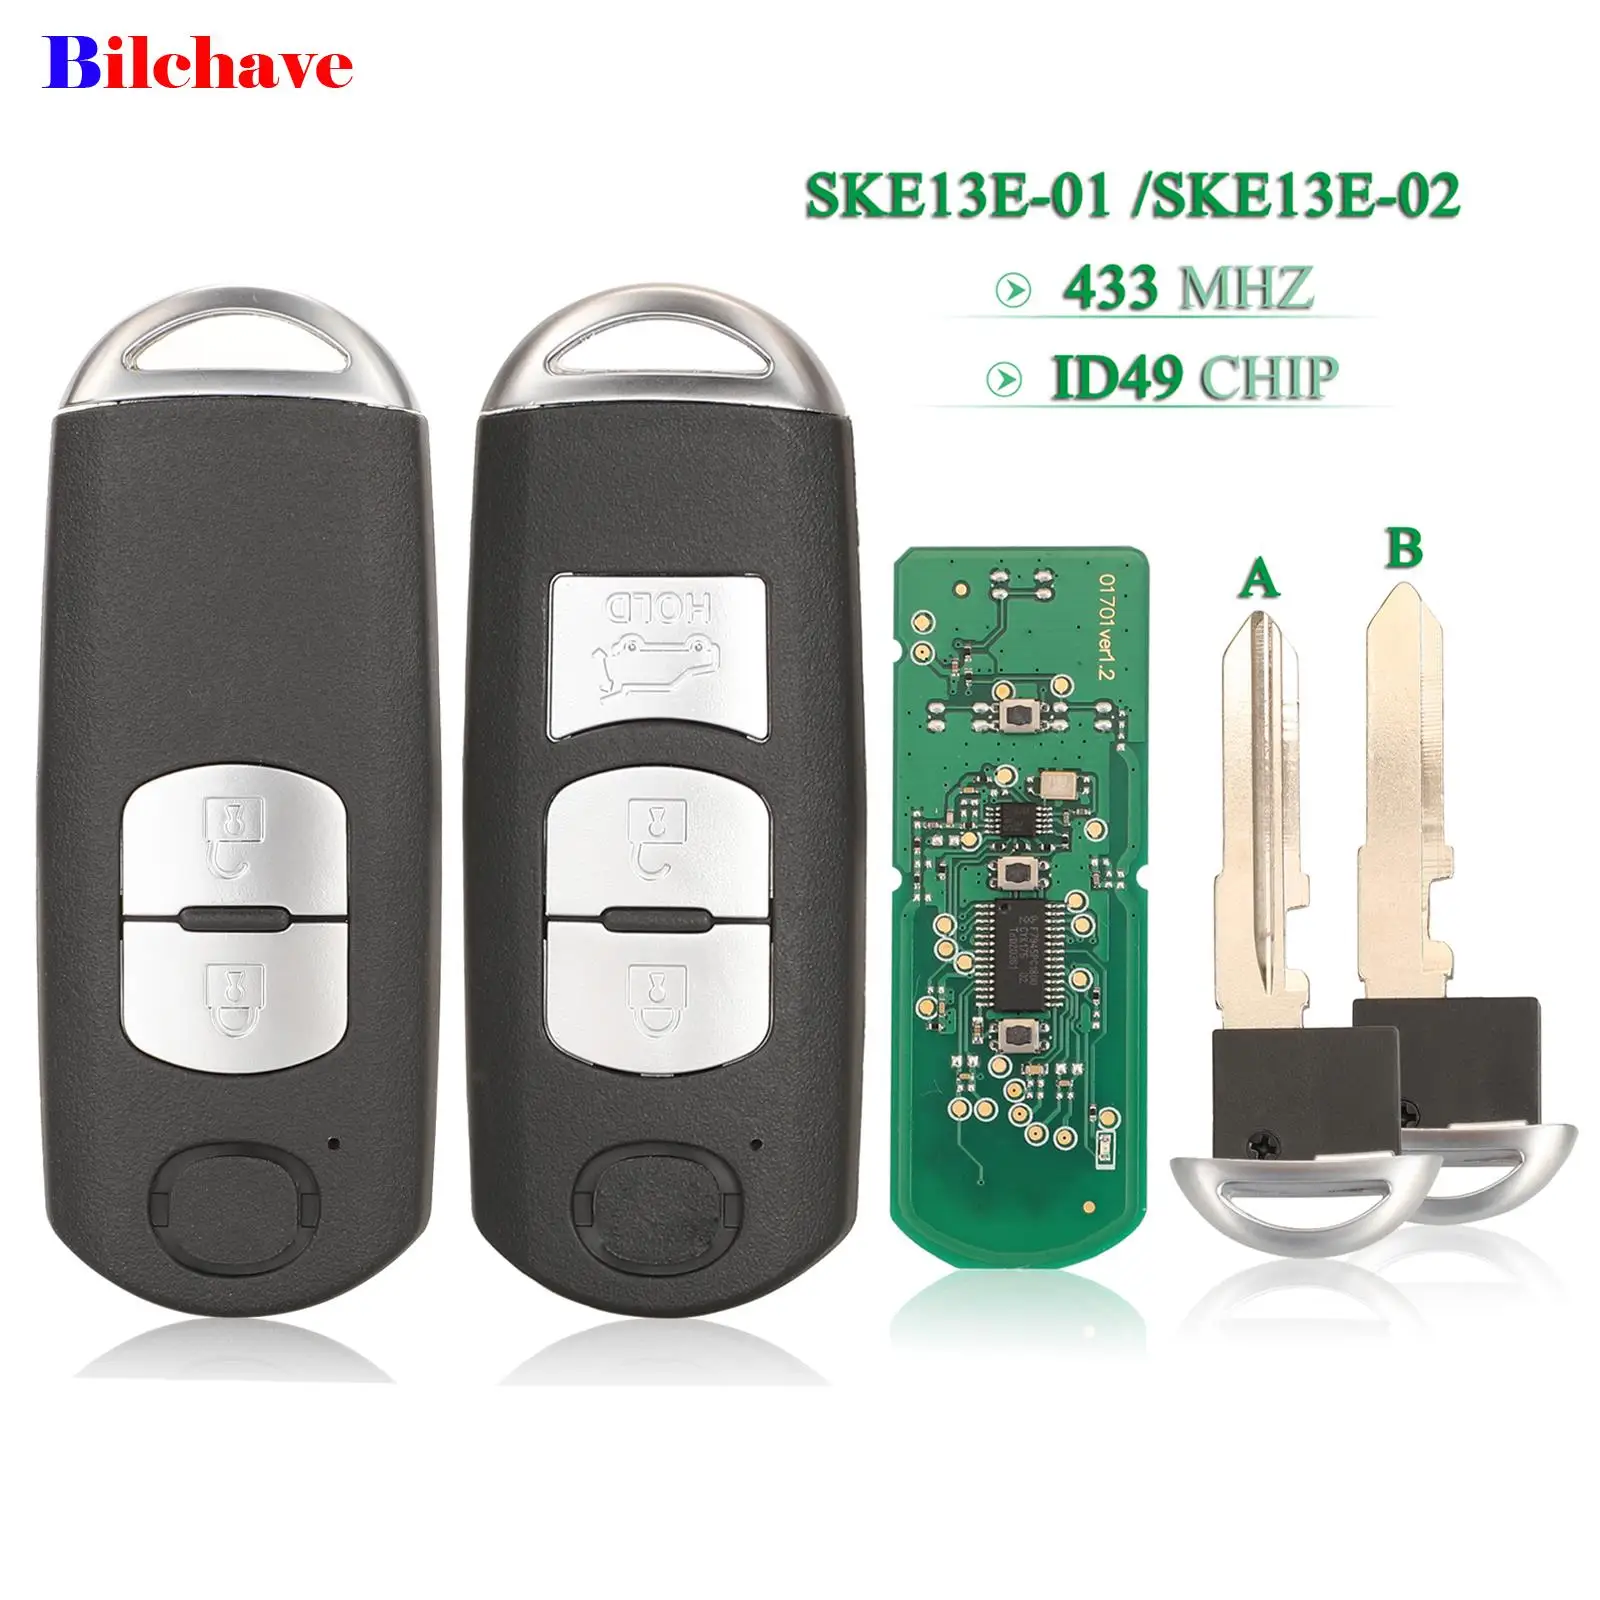 

jingyuqin 2/3 Buttons 433Mhz ID49 Chip Remote Smart Car Key Fob For MAZDA CX-3 Axela CX-5 Atenza Model SKE13E-01 /SKE13E-02